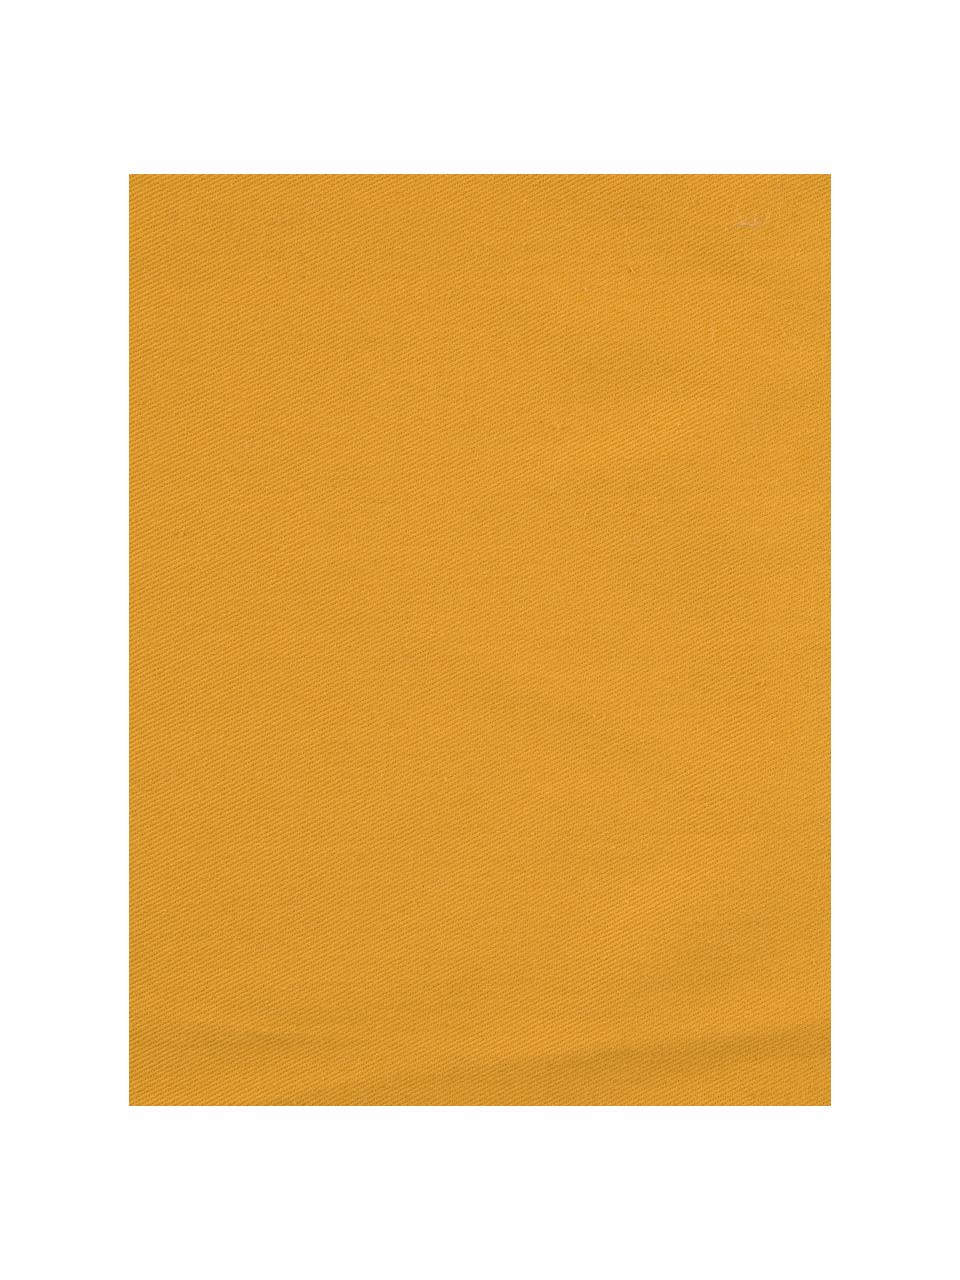 Poszewka na poduszkę z aksamitu Phoeby, Bawełna, Żółty, S 40 x D 40 cm